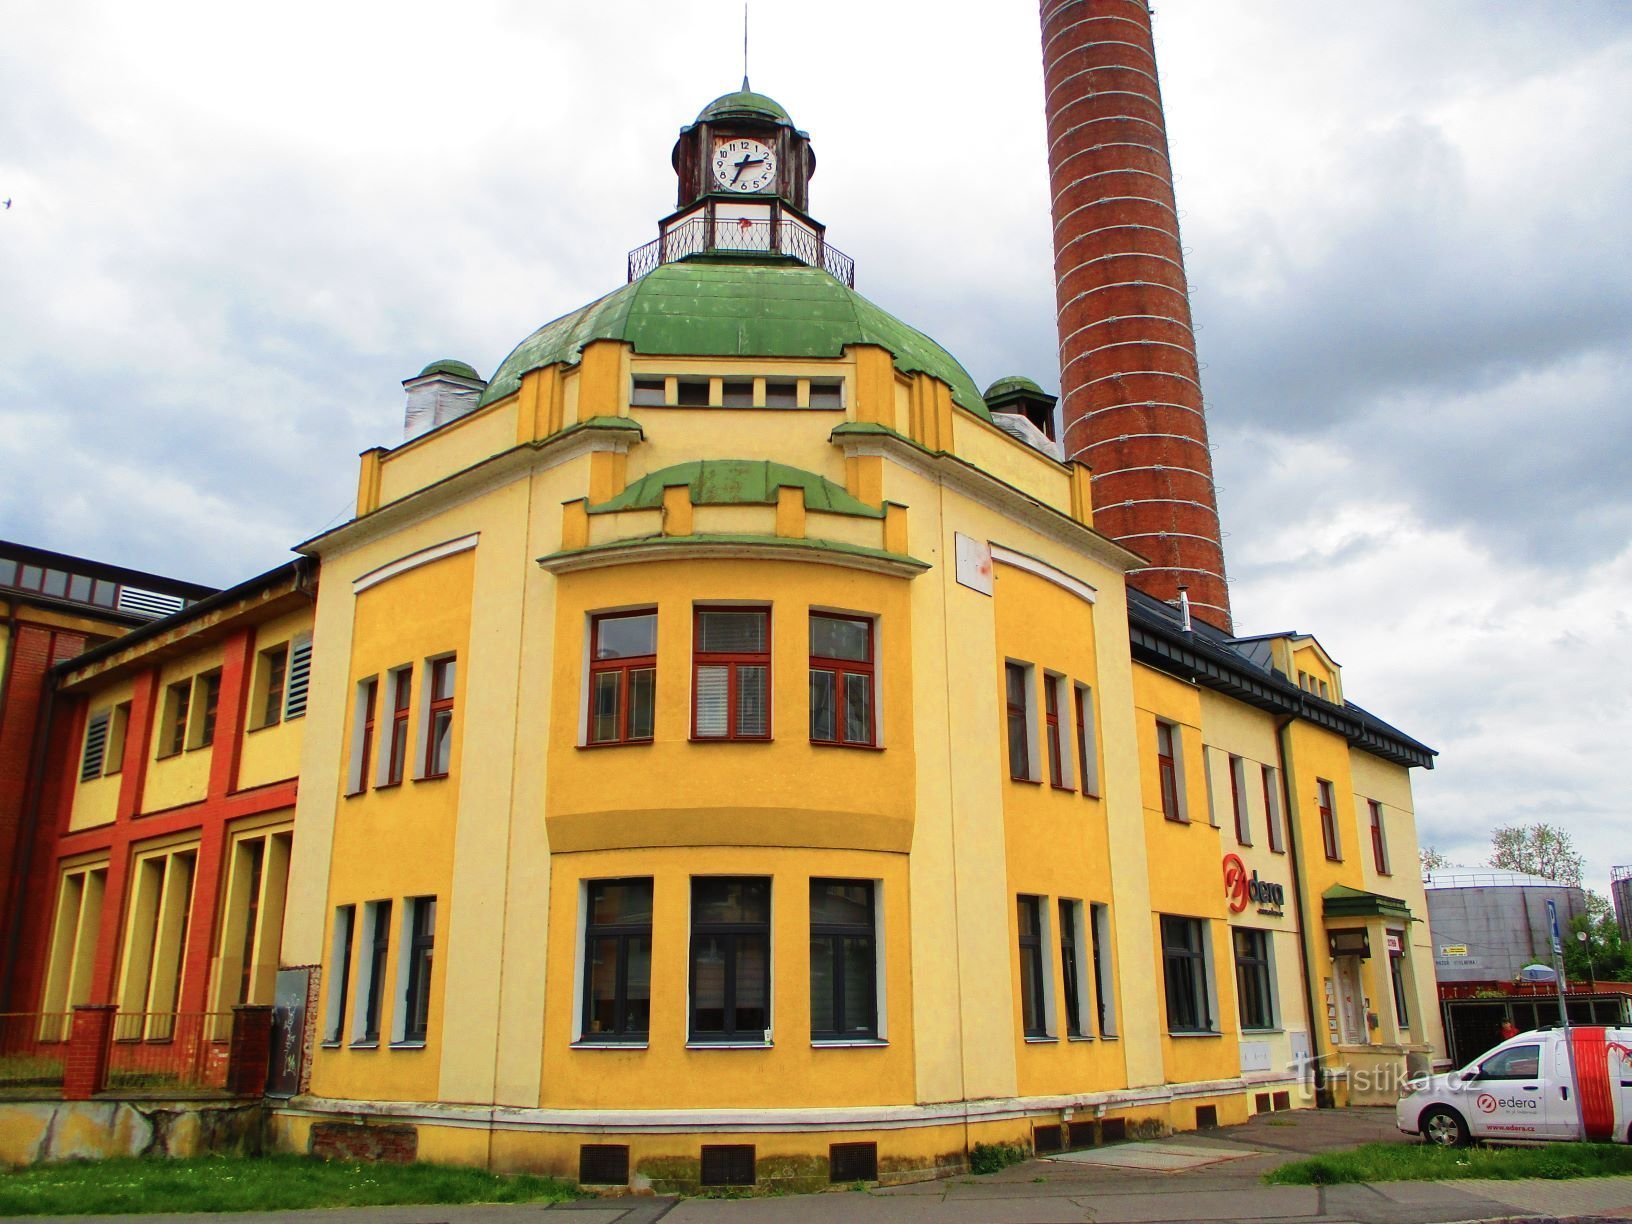 Khu vực nhà máy điện thành phố cũ (Pardubice, 25.5.2021/XNUMX/XNUMX)